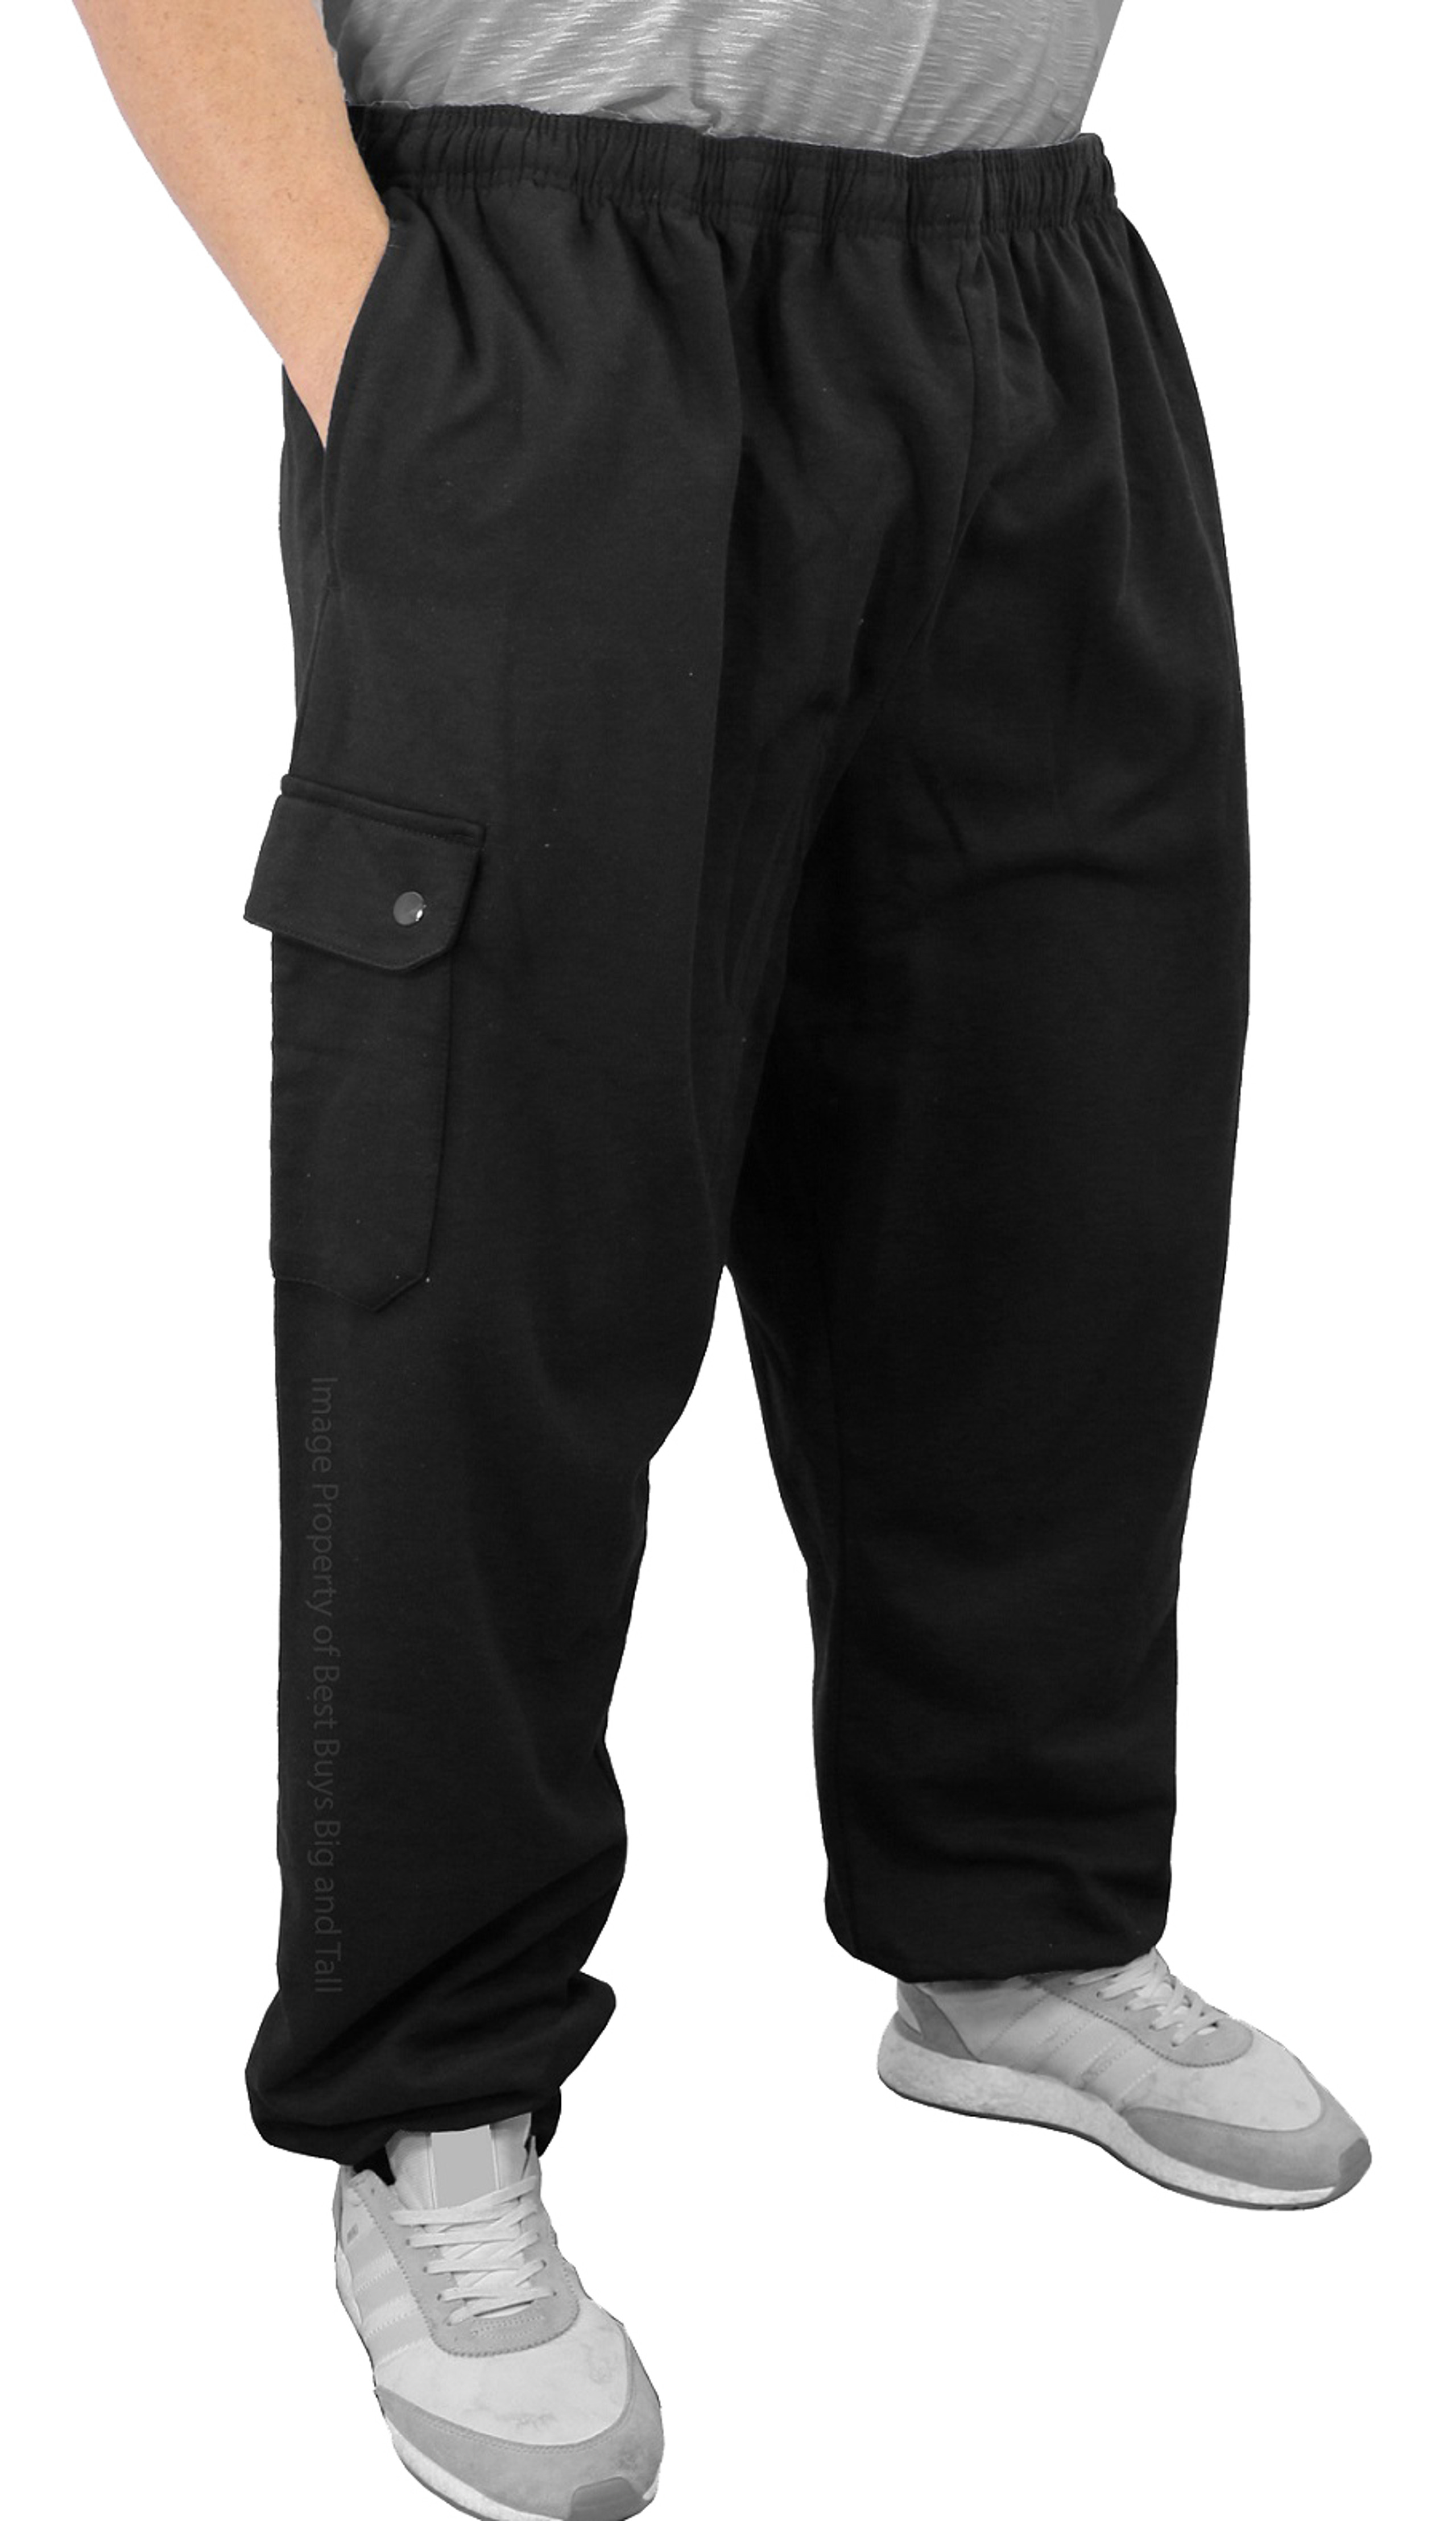 ROCXL Big & Tall Men's Cargo Fleece Pants Joggers in Black